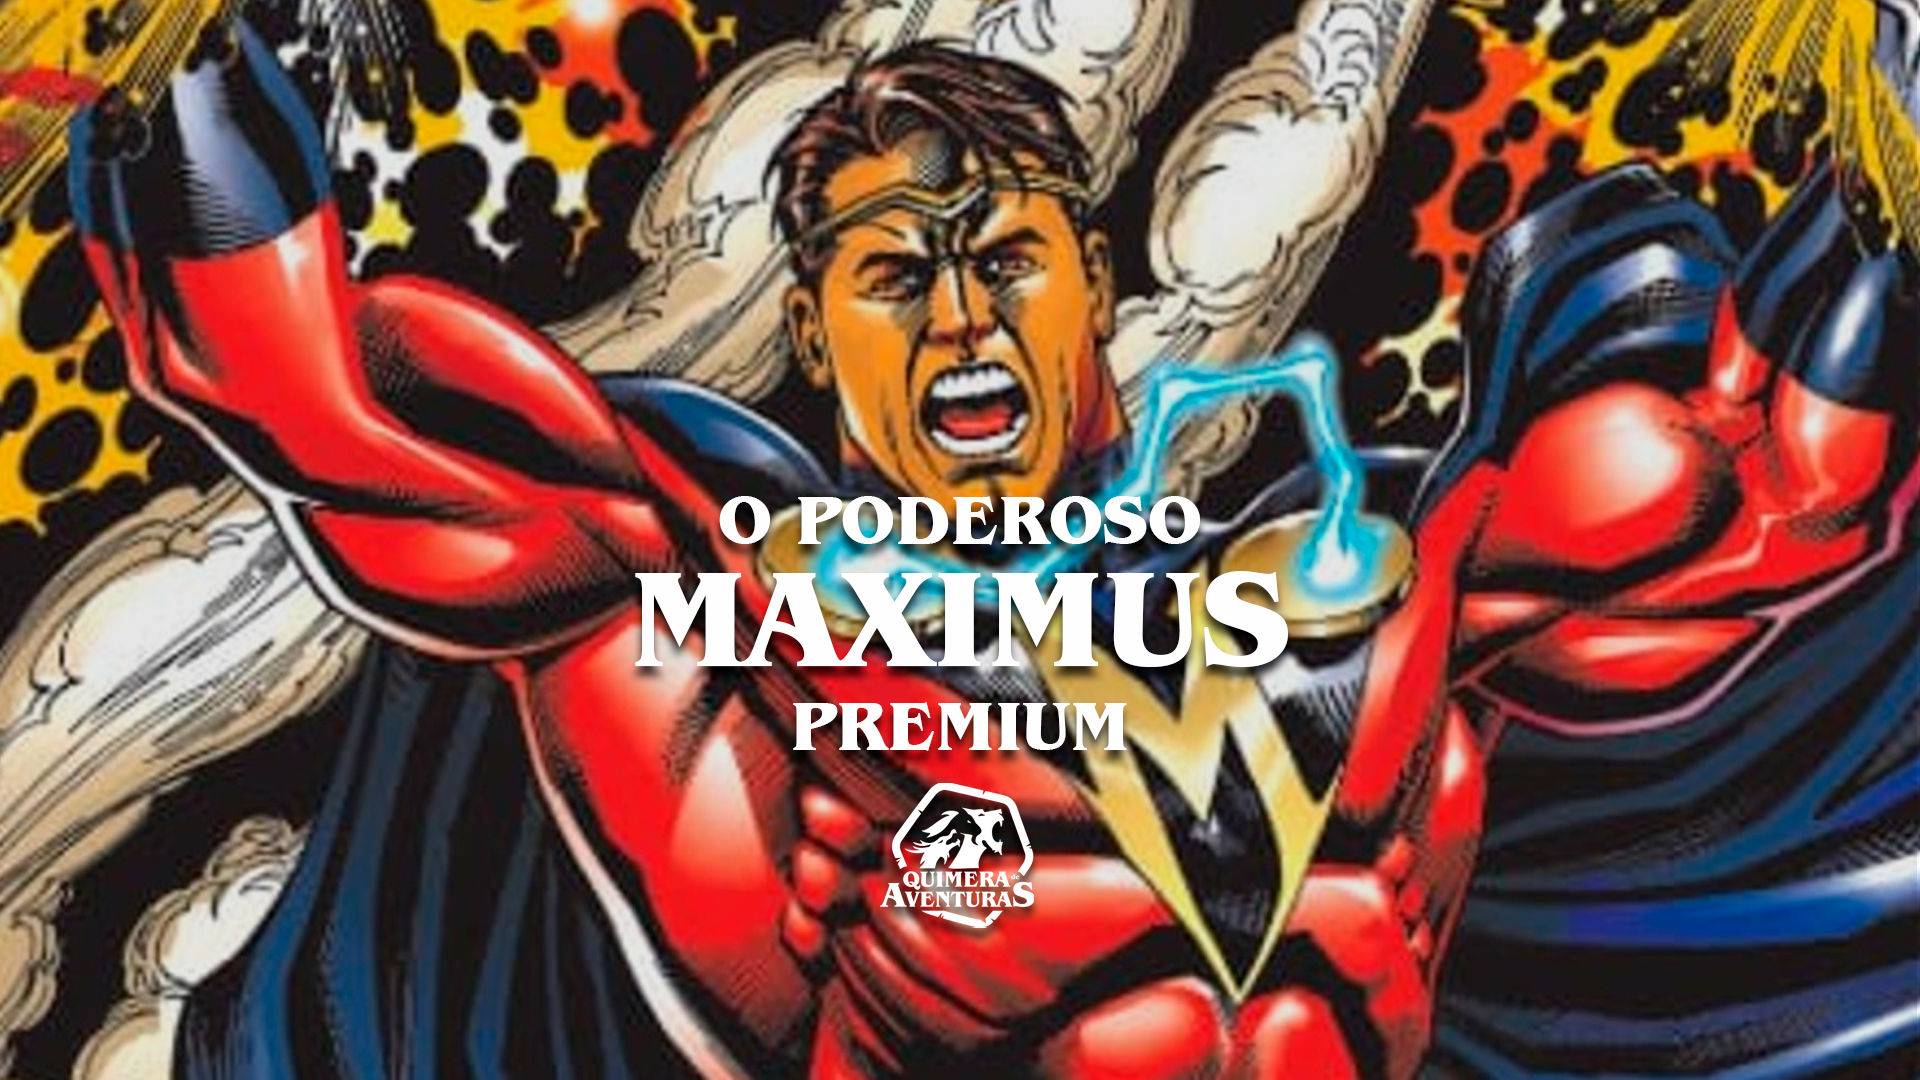 O Poderoso Maximus – Premium – Quimera de Aventuras